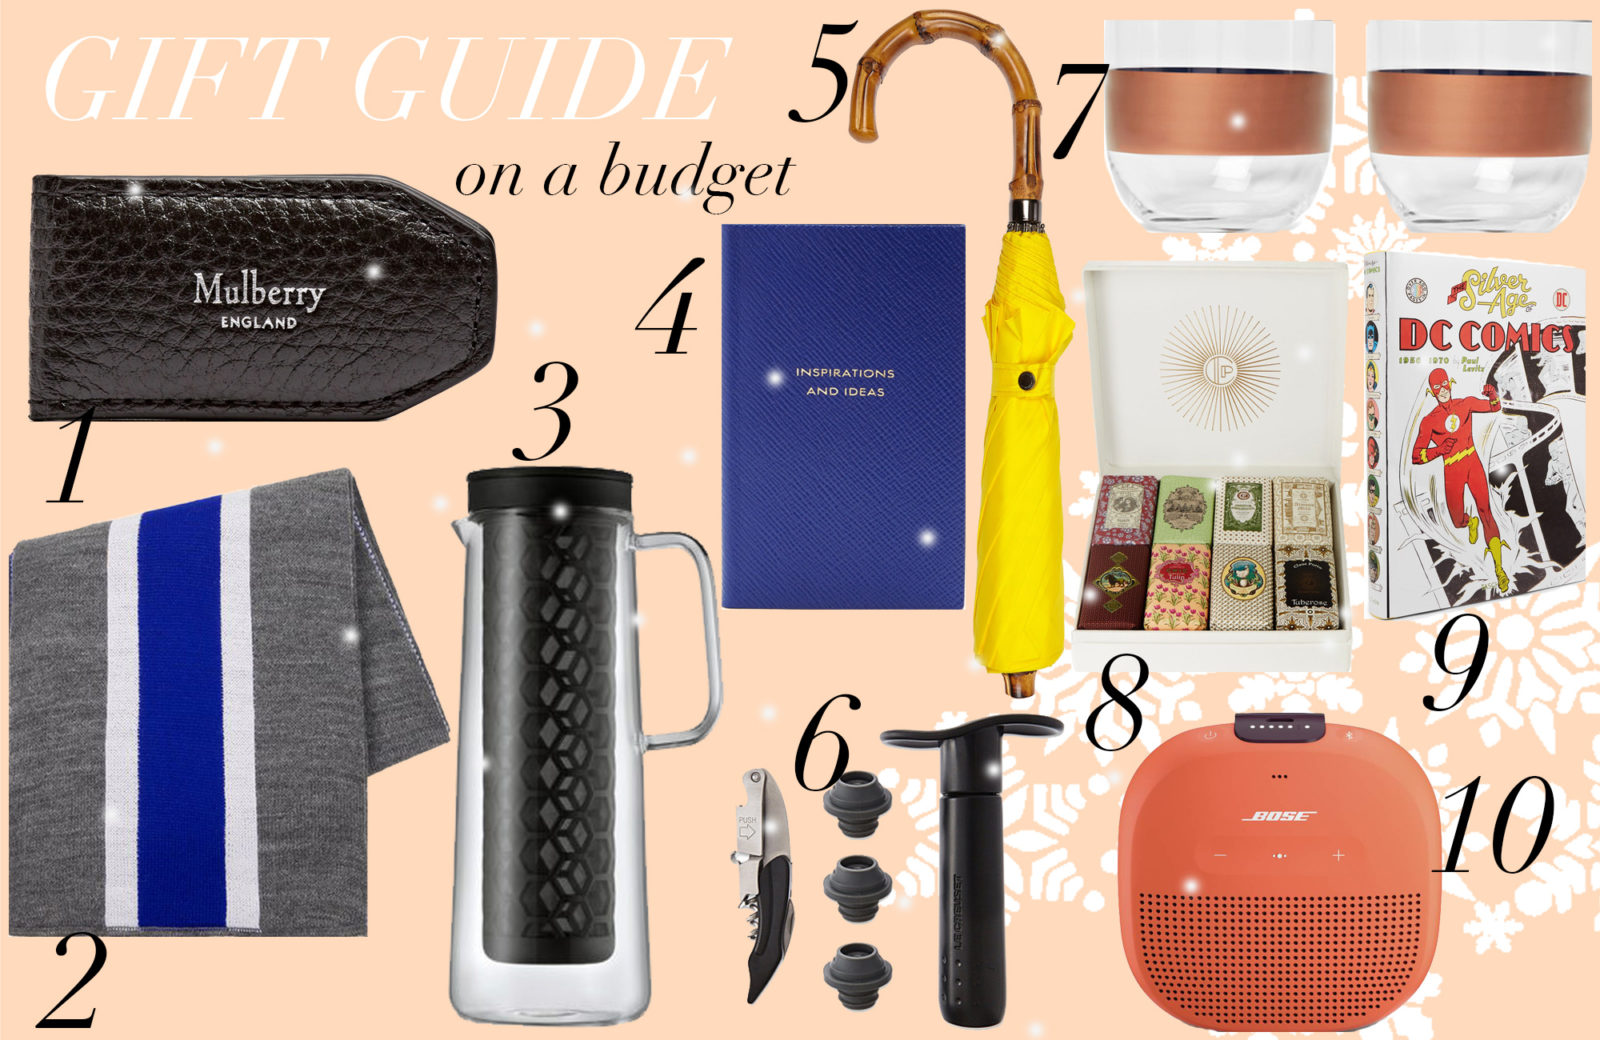 Gift Guide: 10 Budget-Geschenkideen unter 100 Euro für die Männer